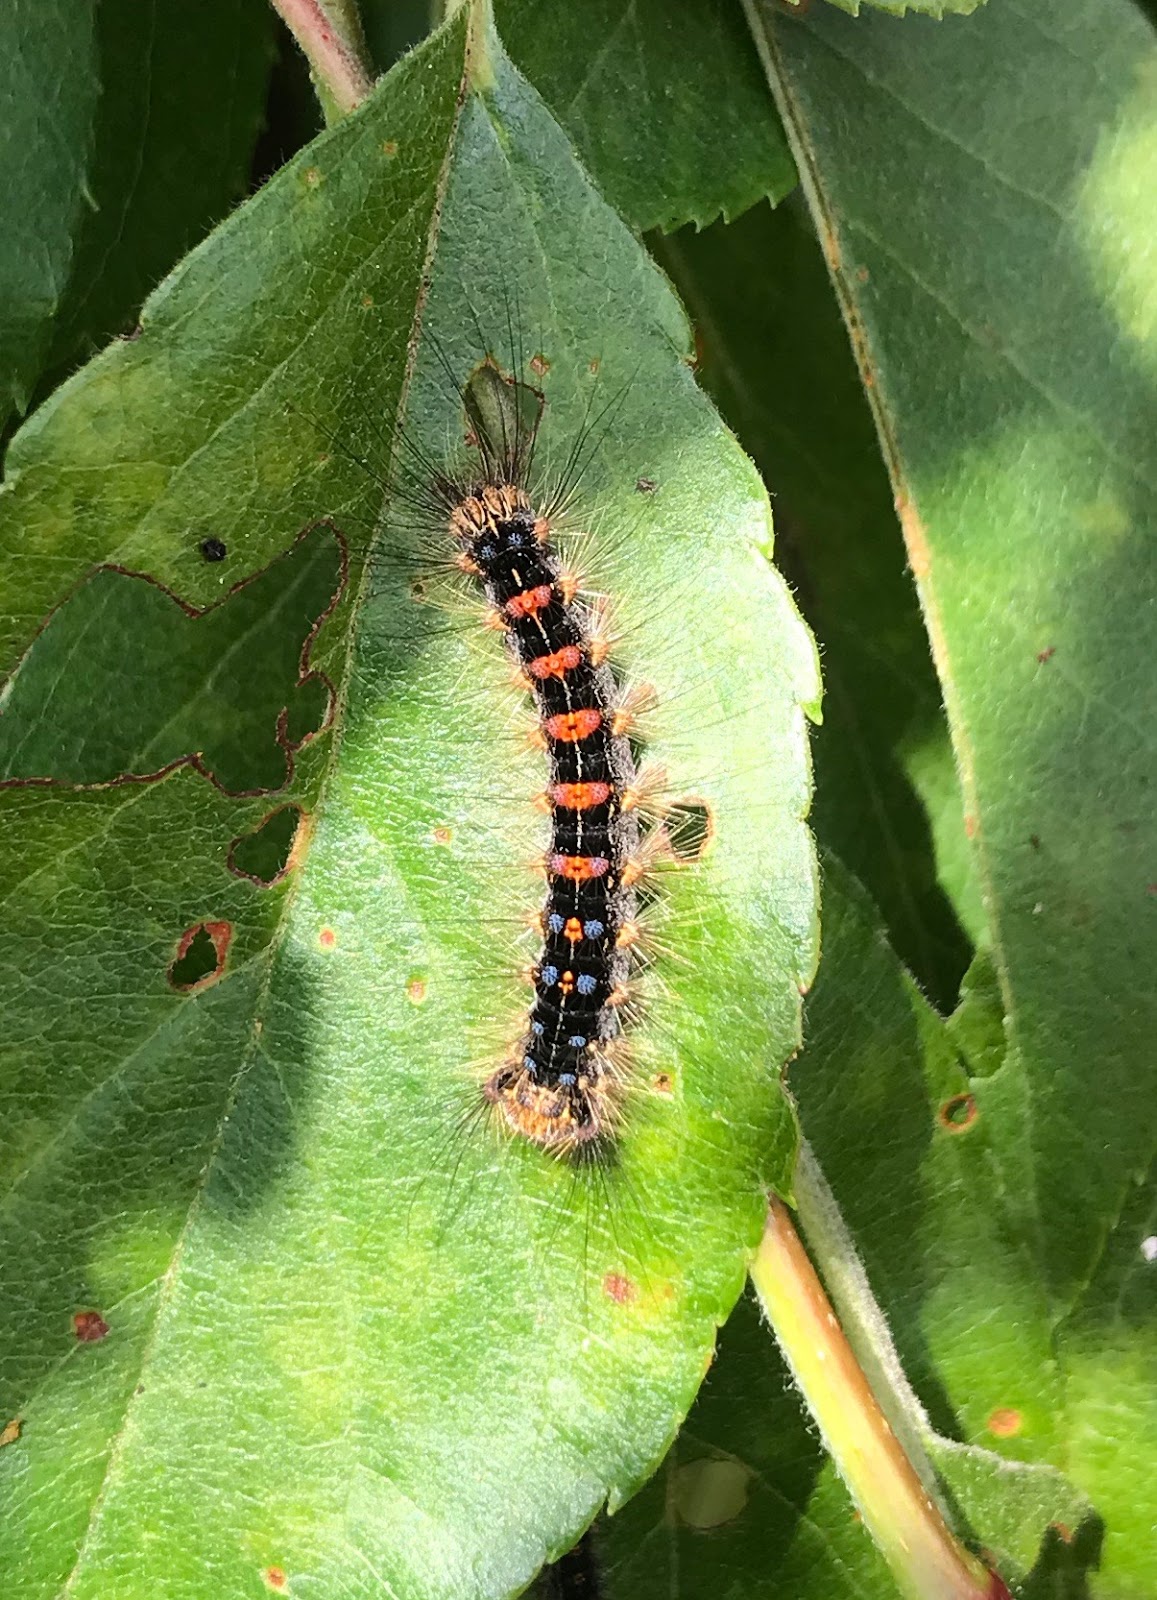 Upper Thames Moths: Caterpillar ID